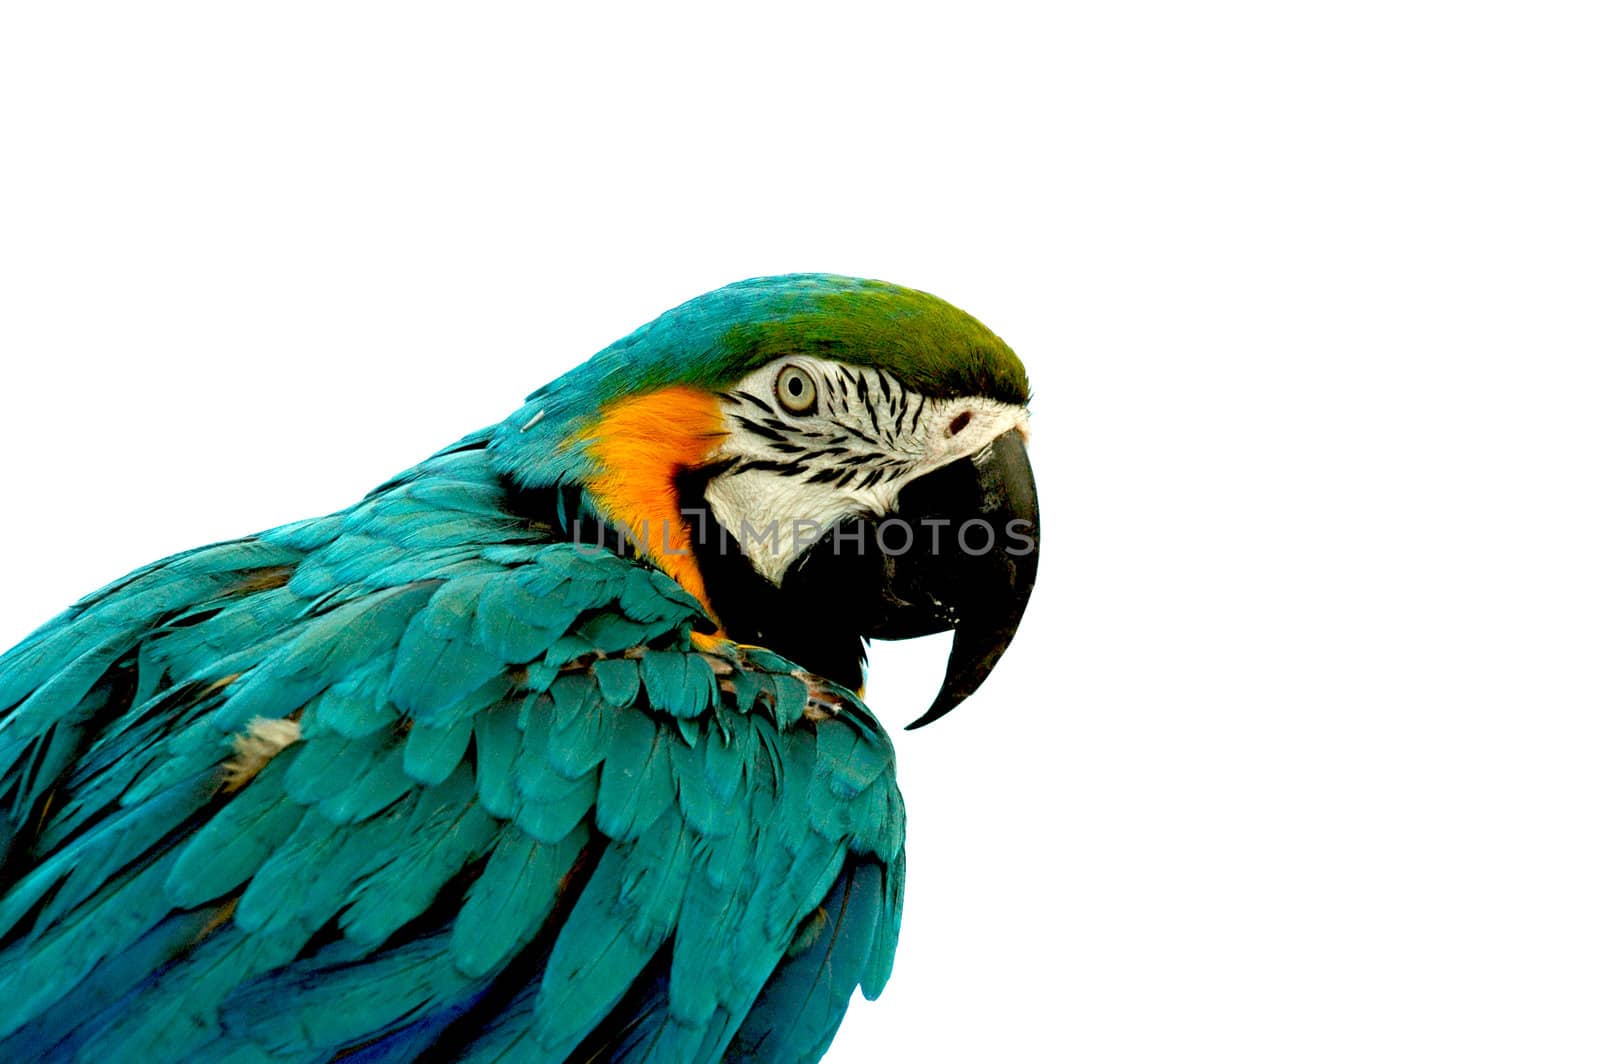 Parrot by tony4urban